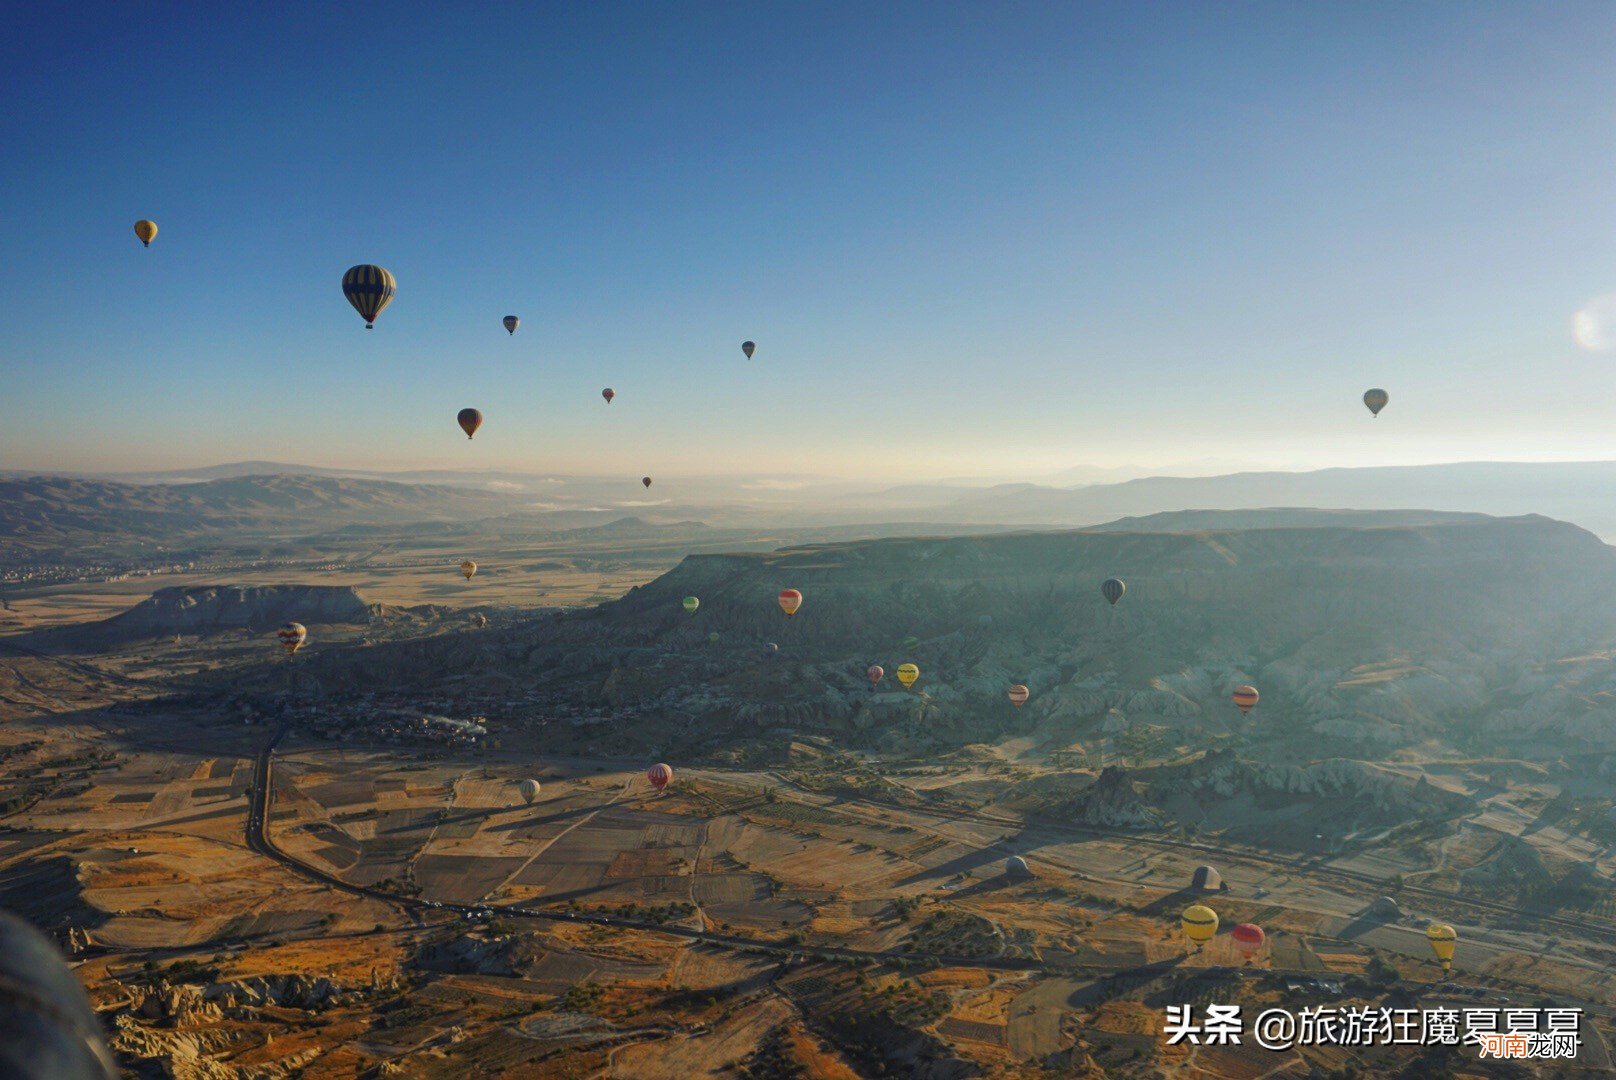 土耳其坐热气球的地方在哪里 土耳其热气球在哪个城市